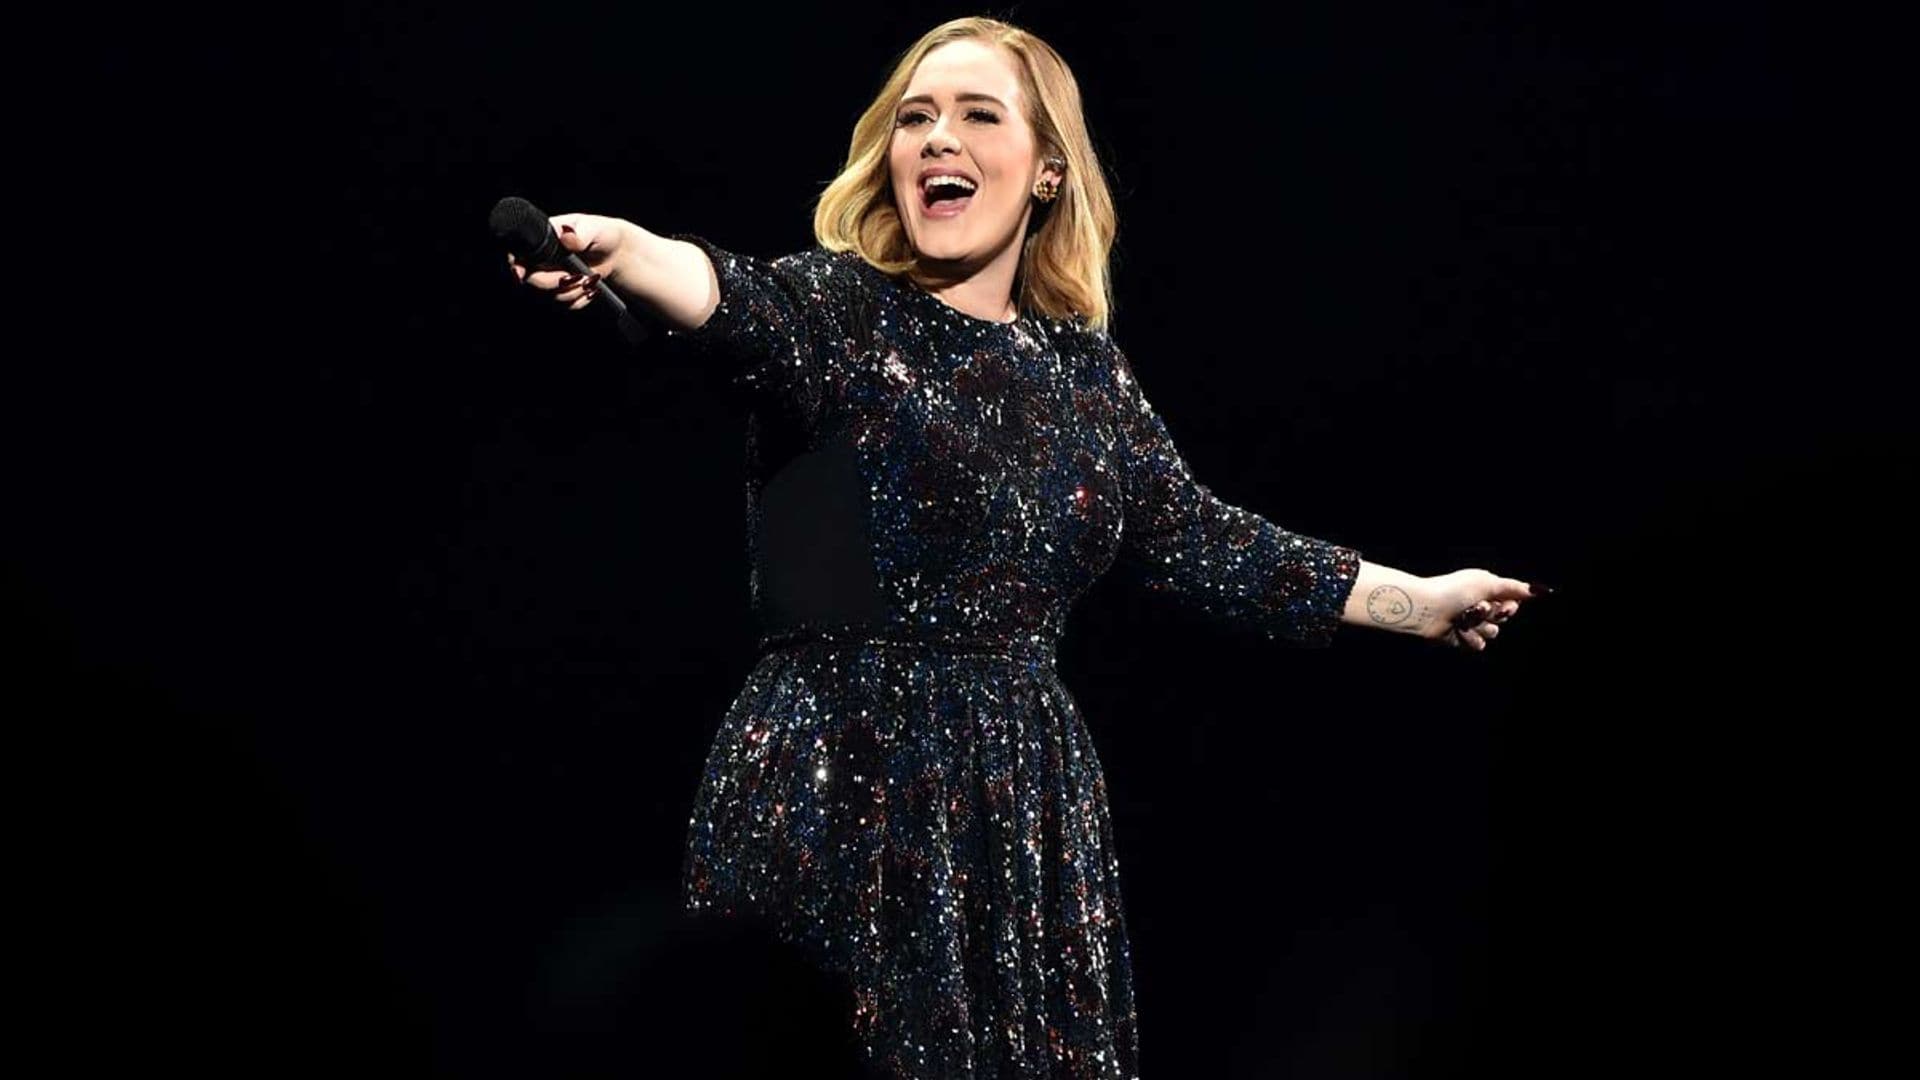 La foto de los 4 millones de 'likes' con la que Adele confirma su noviazgo vestida de Alta Costura